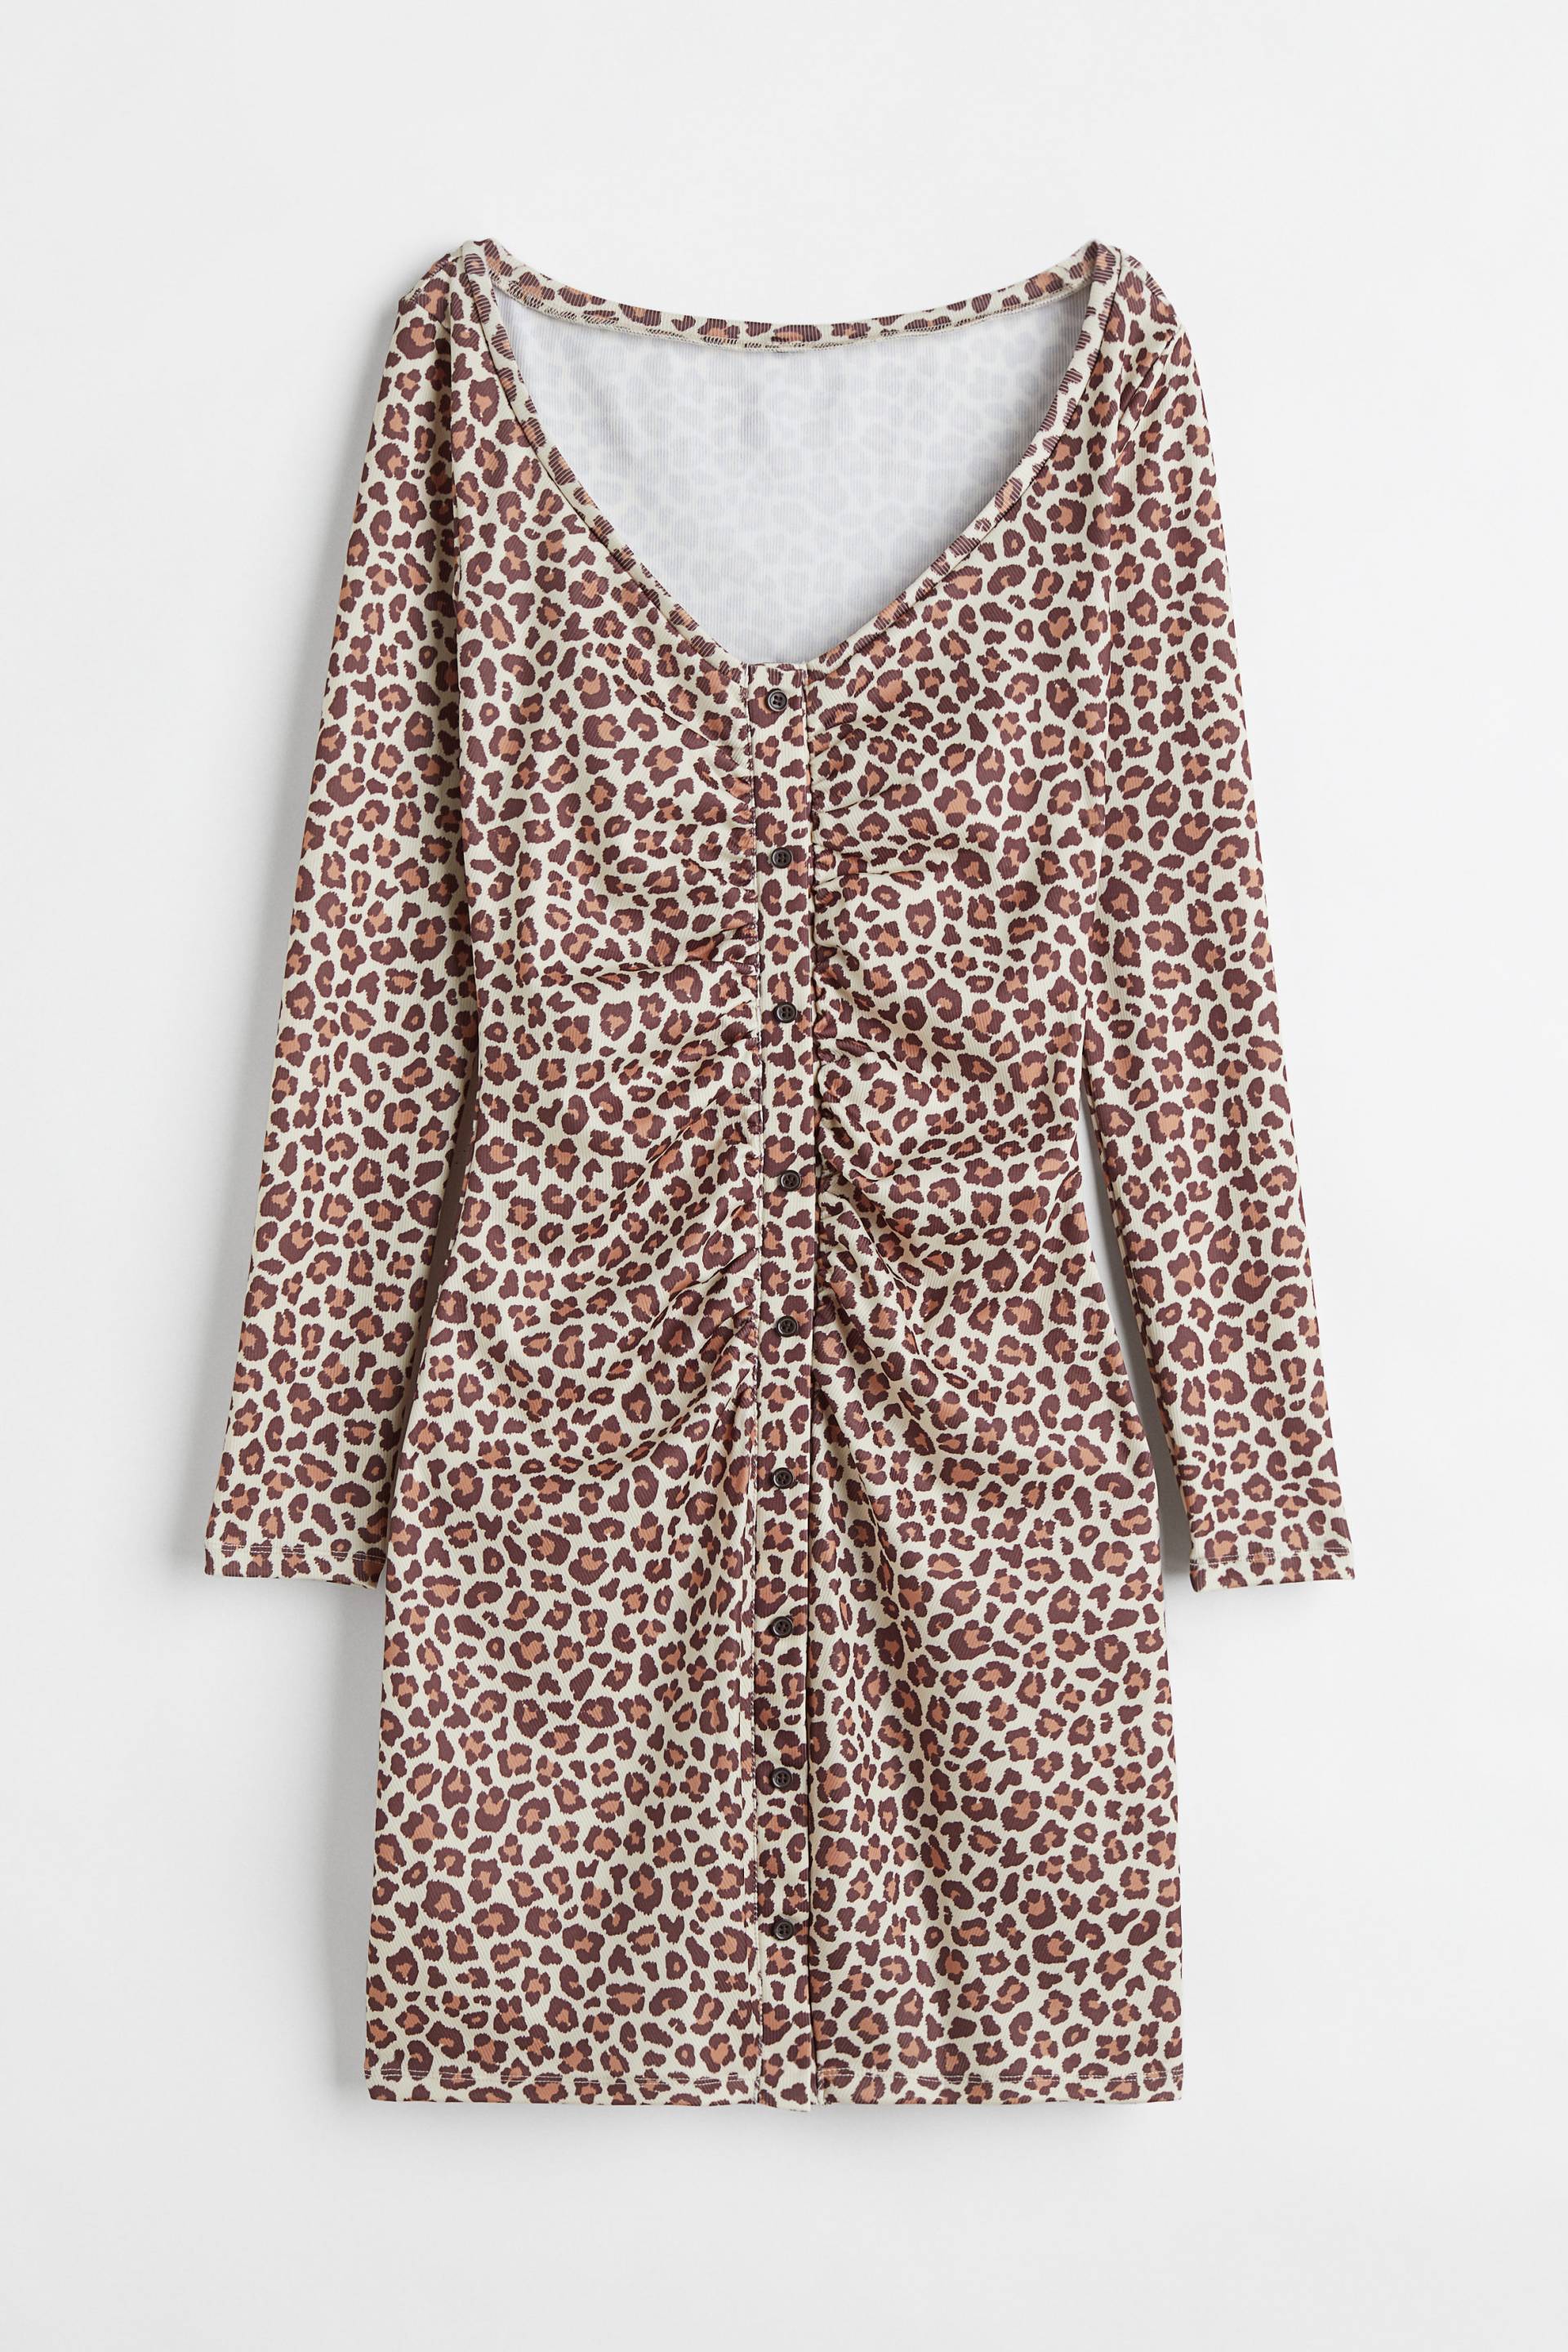 H&M Durchgeknöpftes Kleid Hellbeige/Leopardenprint, Alltagskleider in Größe M. Farbe: Light beige/leopard print von H&M